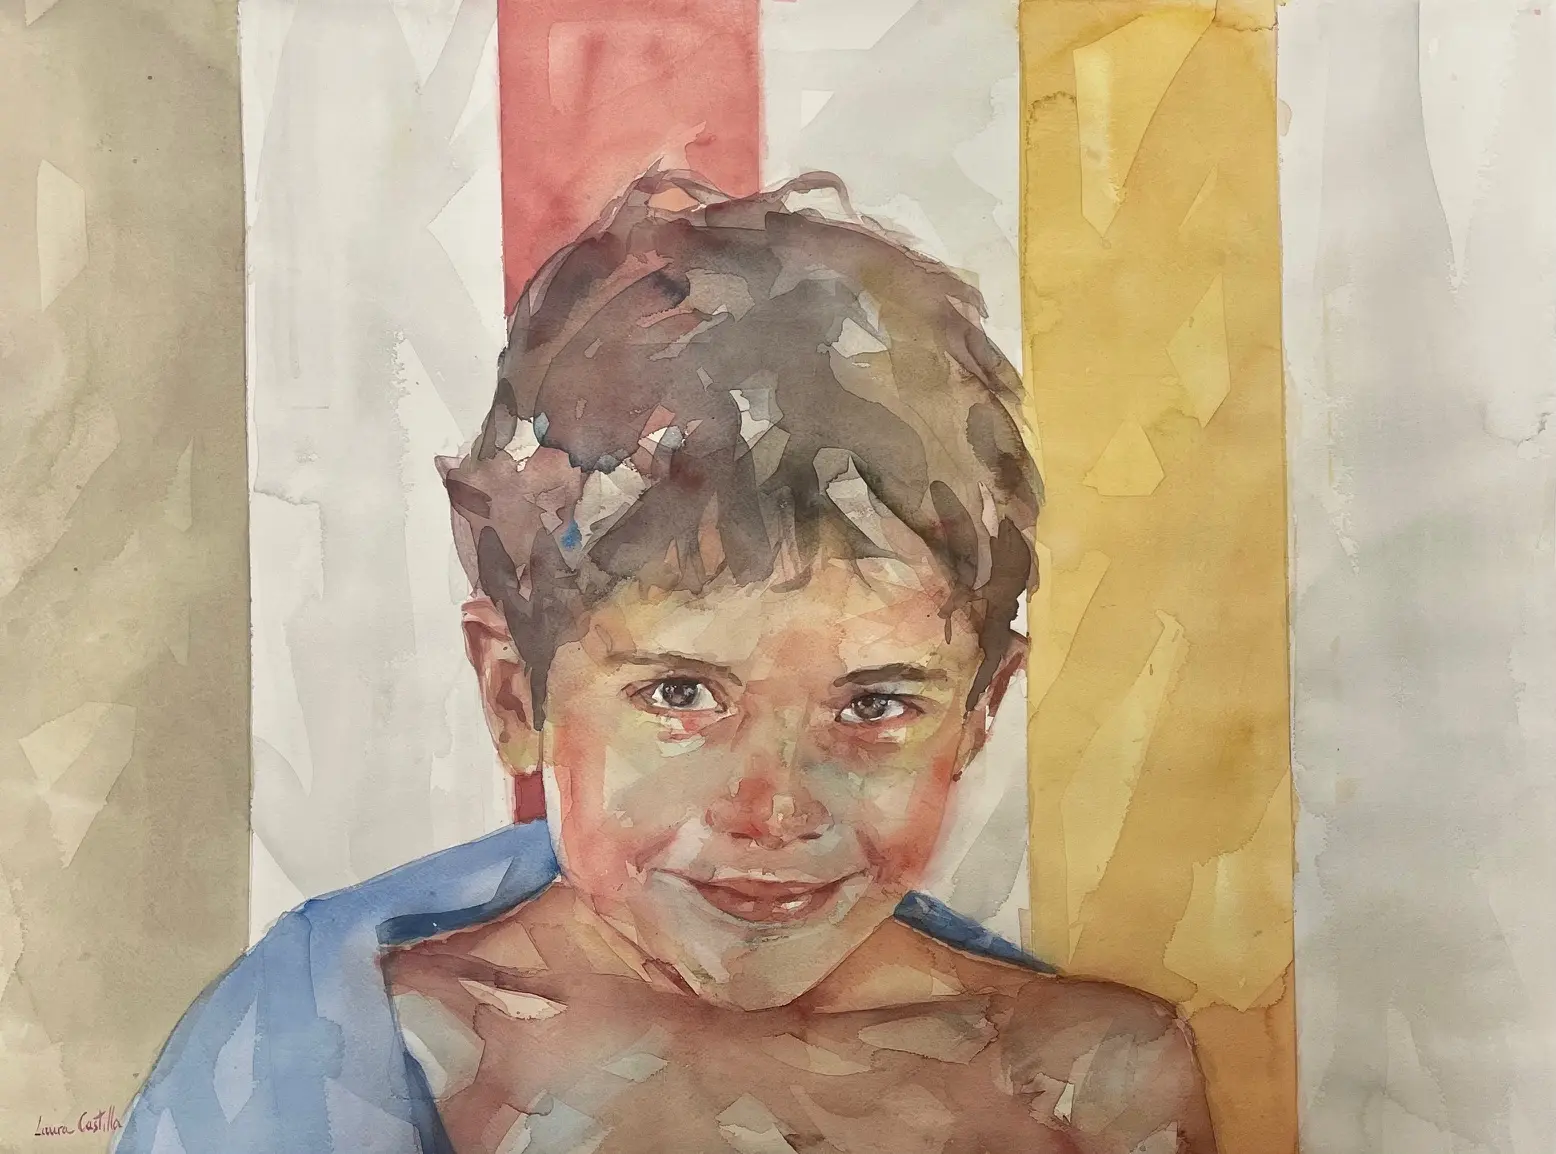 Retrato de un niño en acuarela